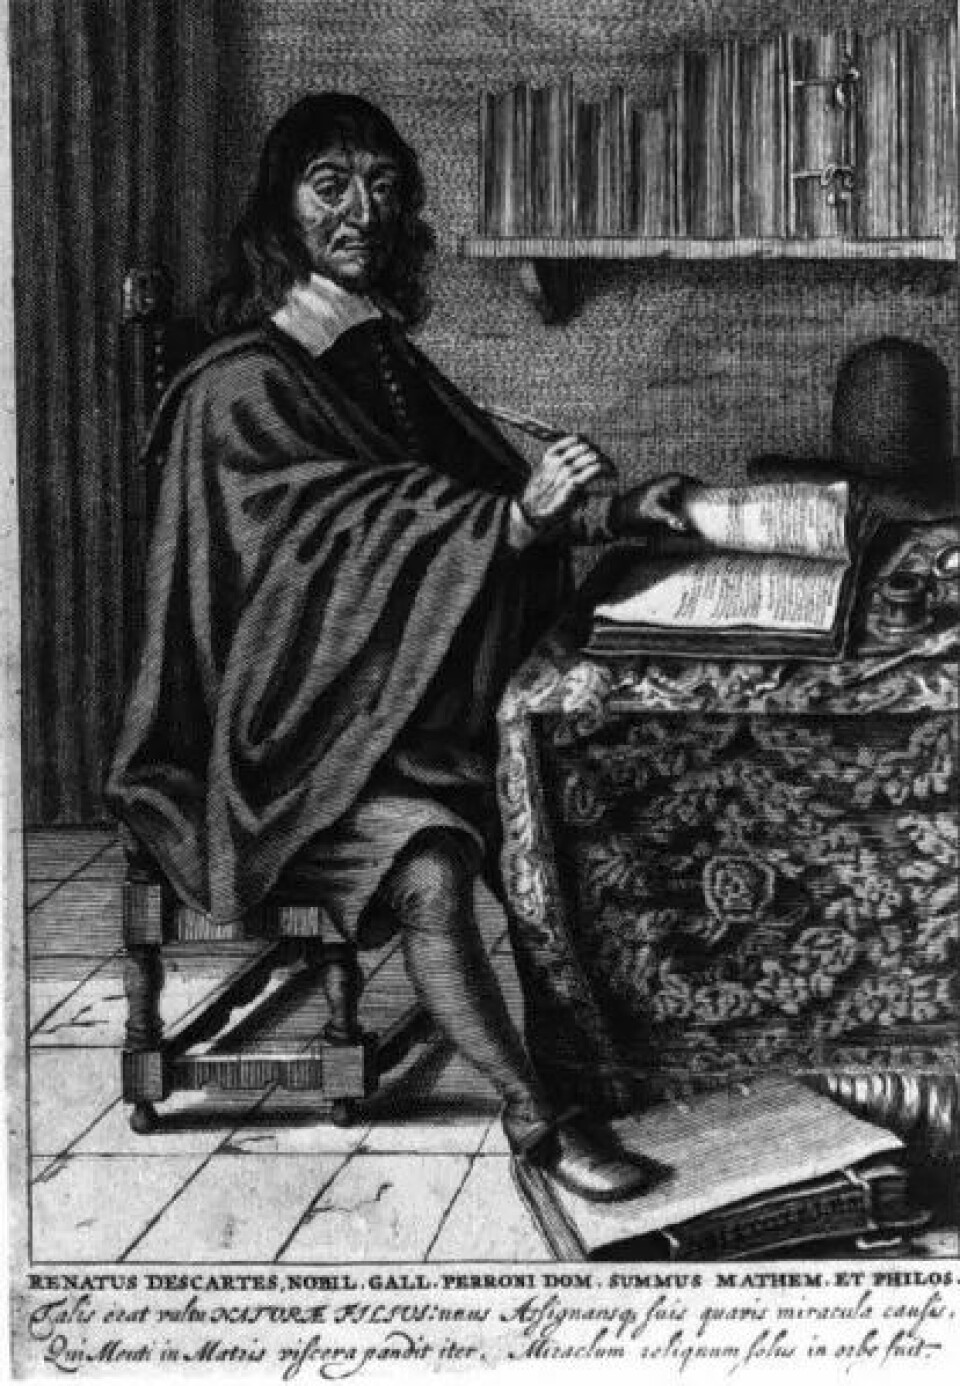 Descartes skille mellom subjekt og objekt har ført filosofien på avveie, mener Midgley. (Illustrasjon: Wikimedia Commons)